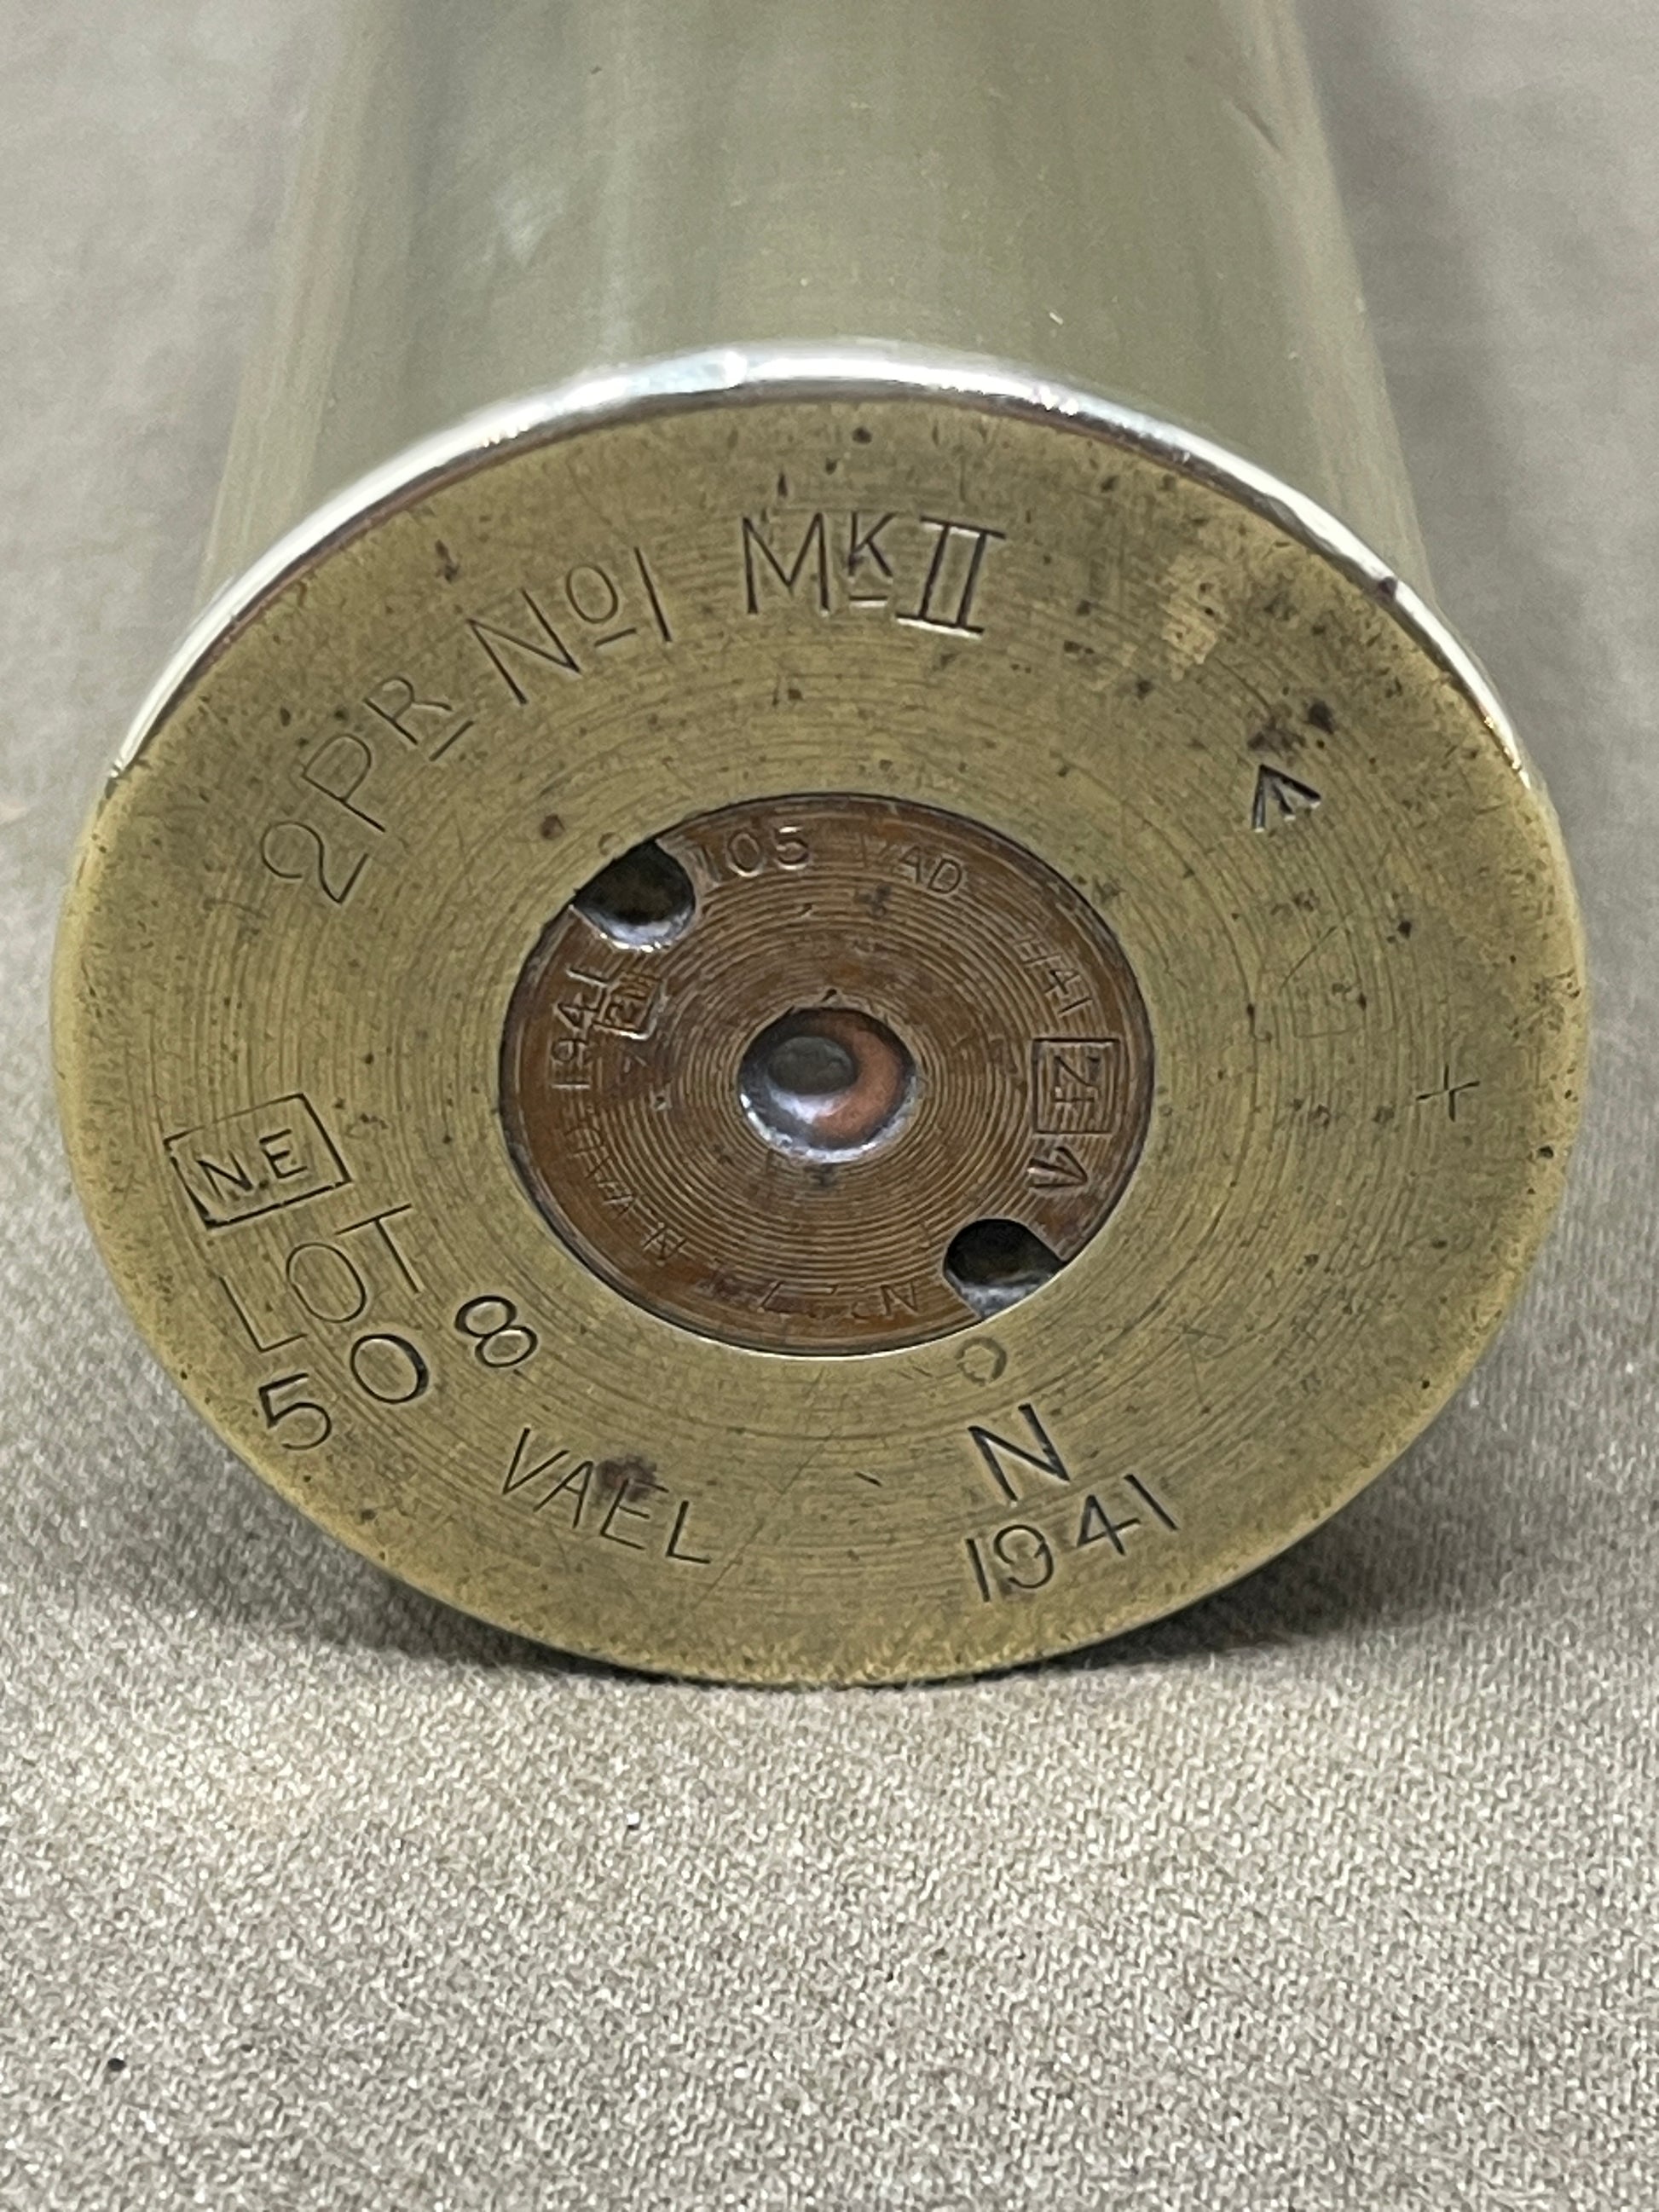 WW2 1937 Naval 2 Pounder Pom-Pom Gun No1 MkII Cartridge Shell Case